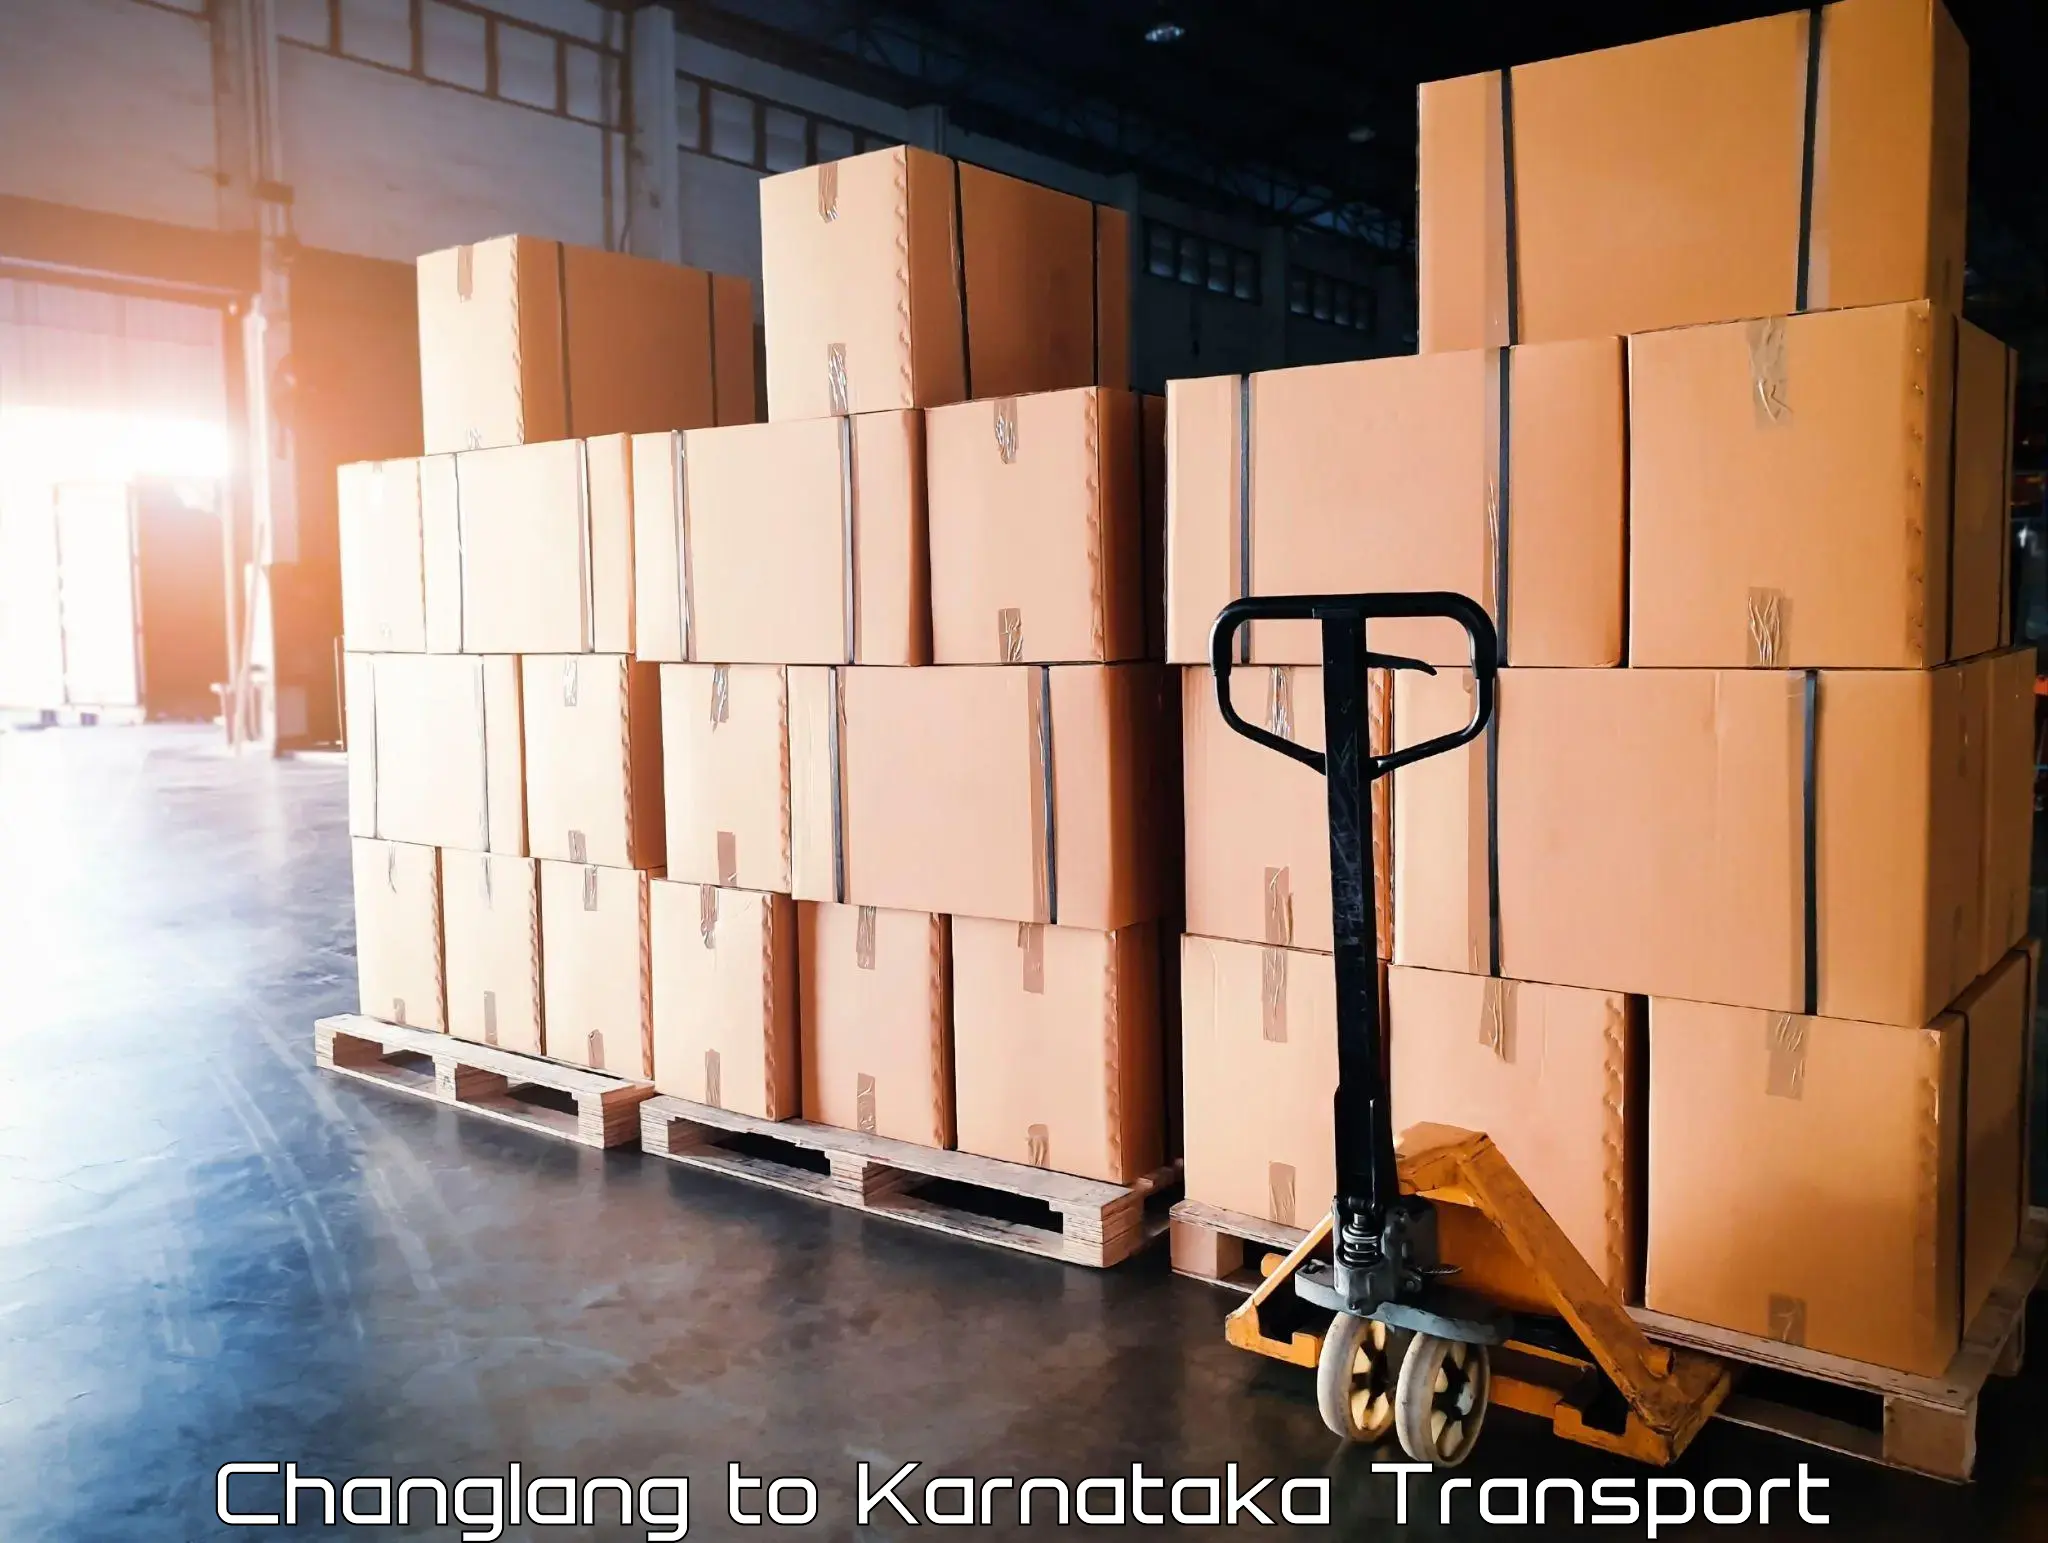 Delivery service Changlang to Karnataka